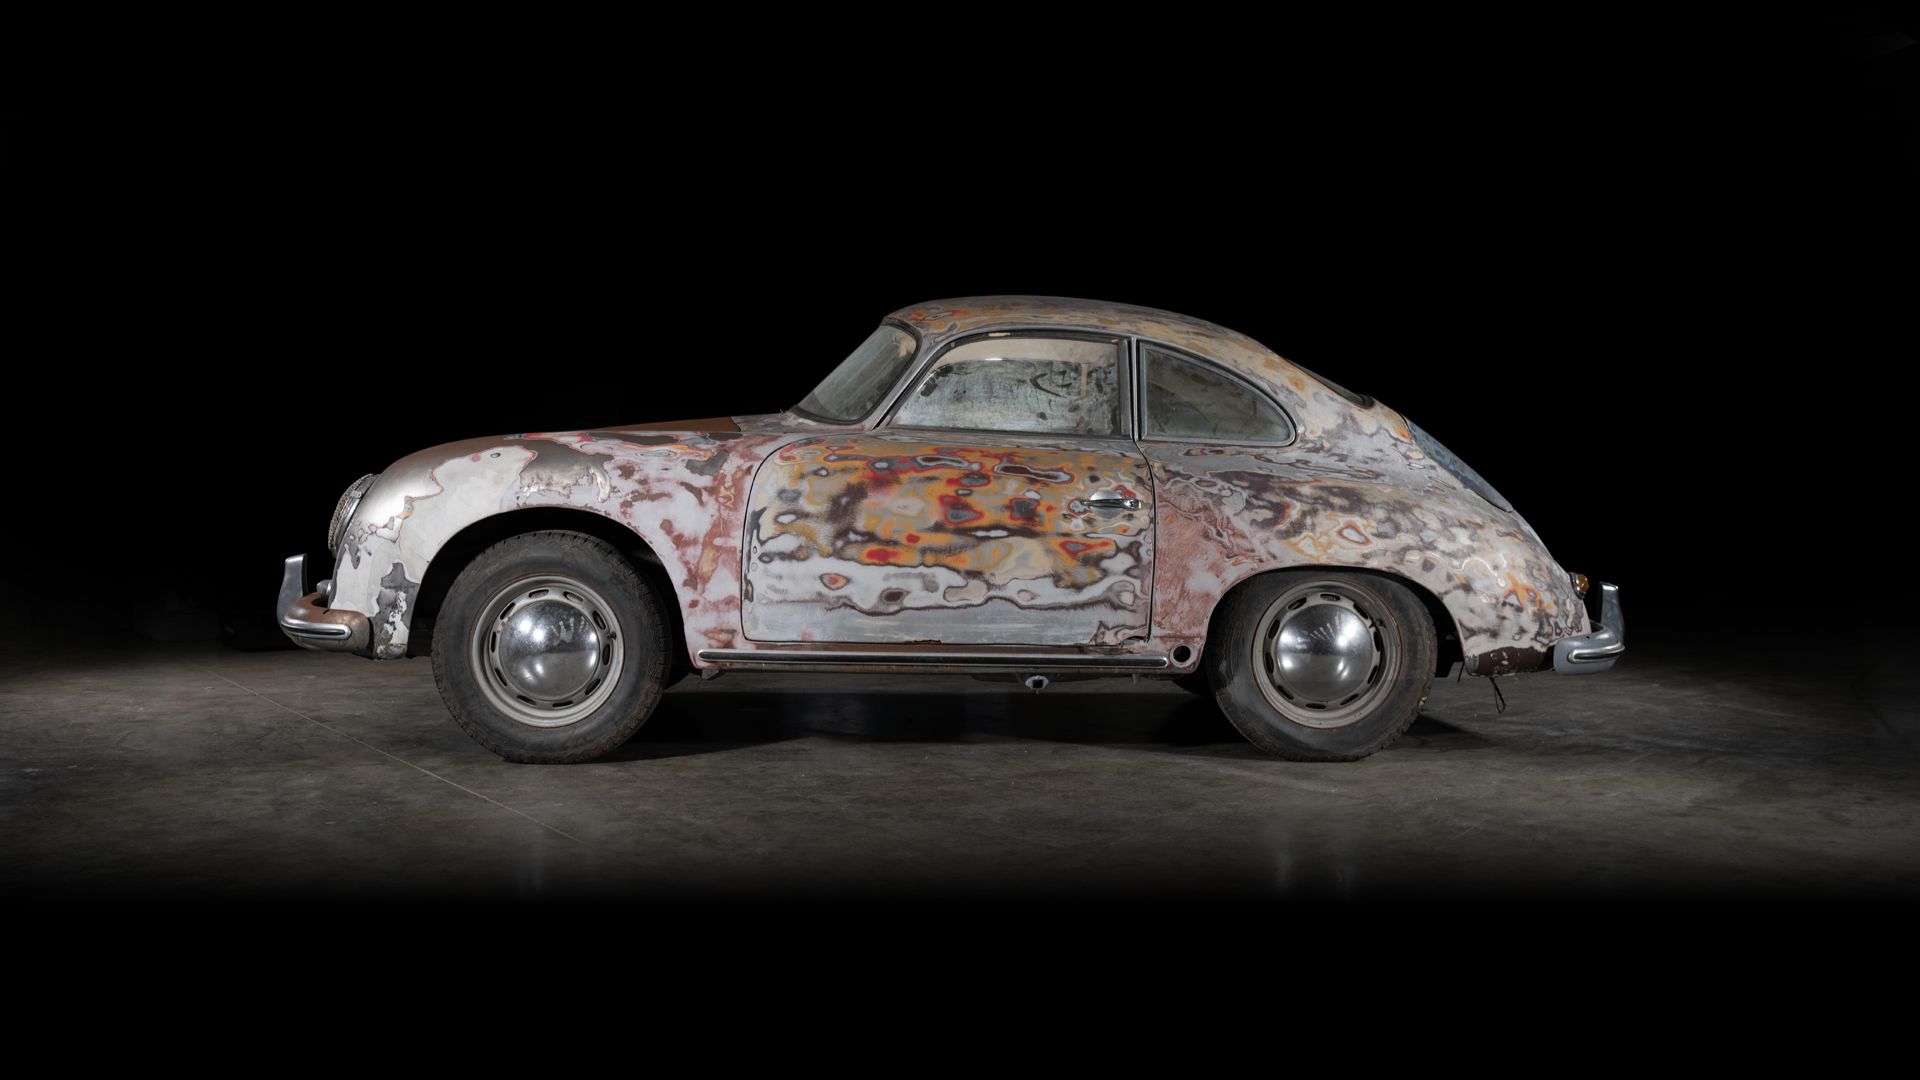 Porsche 356 restoration